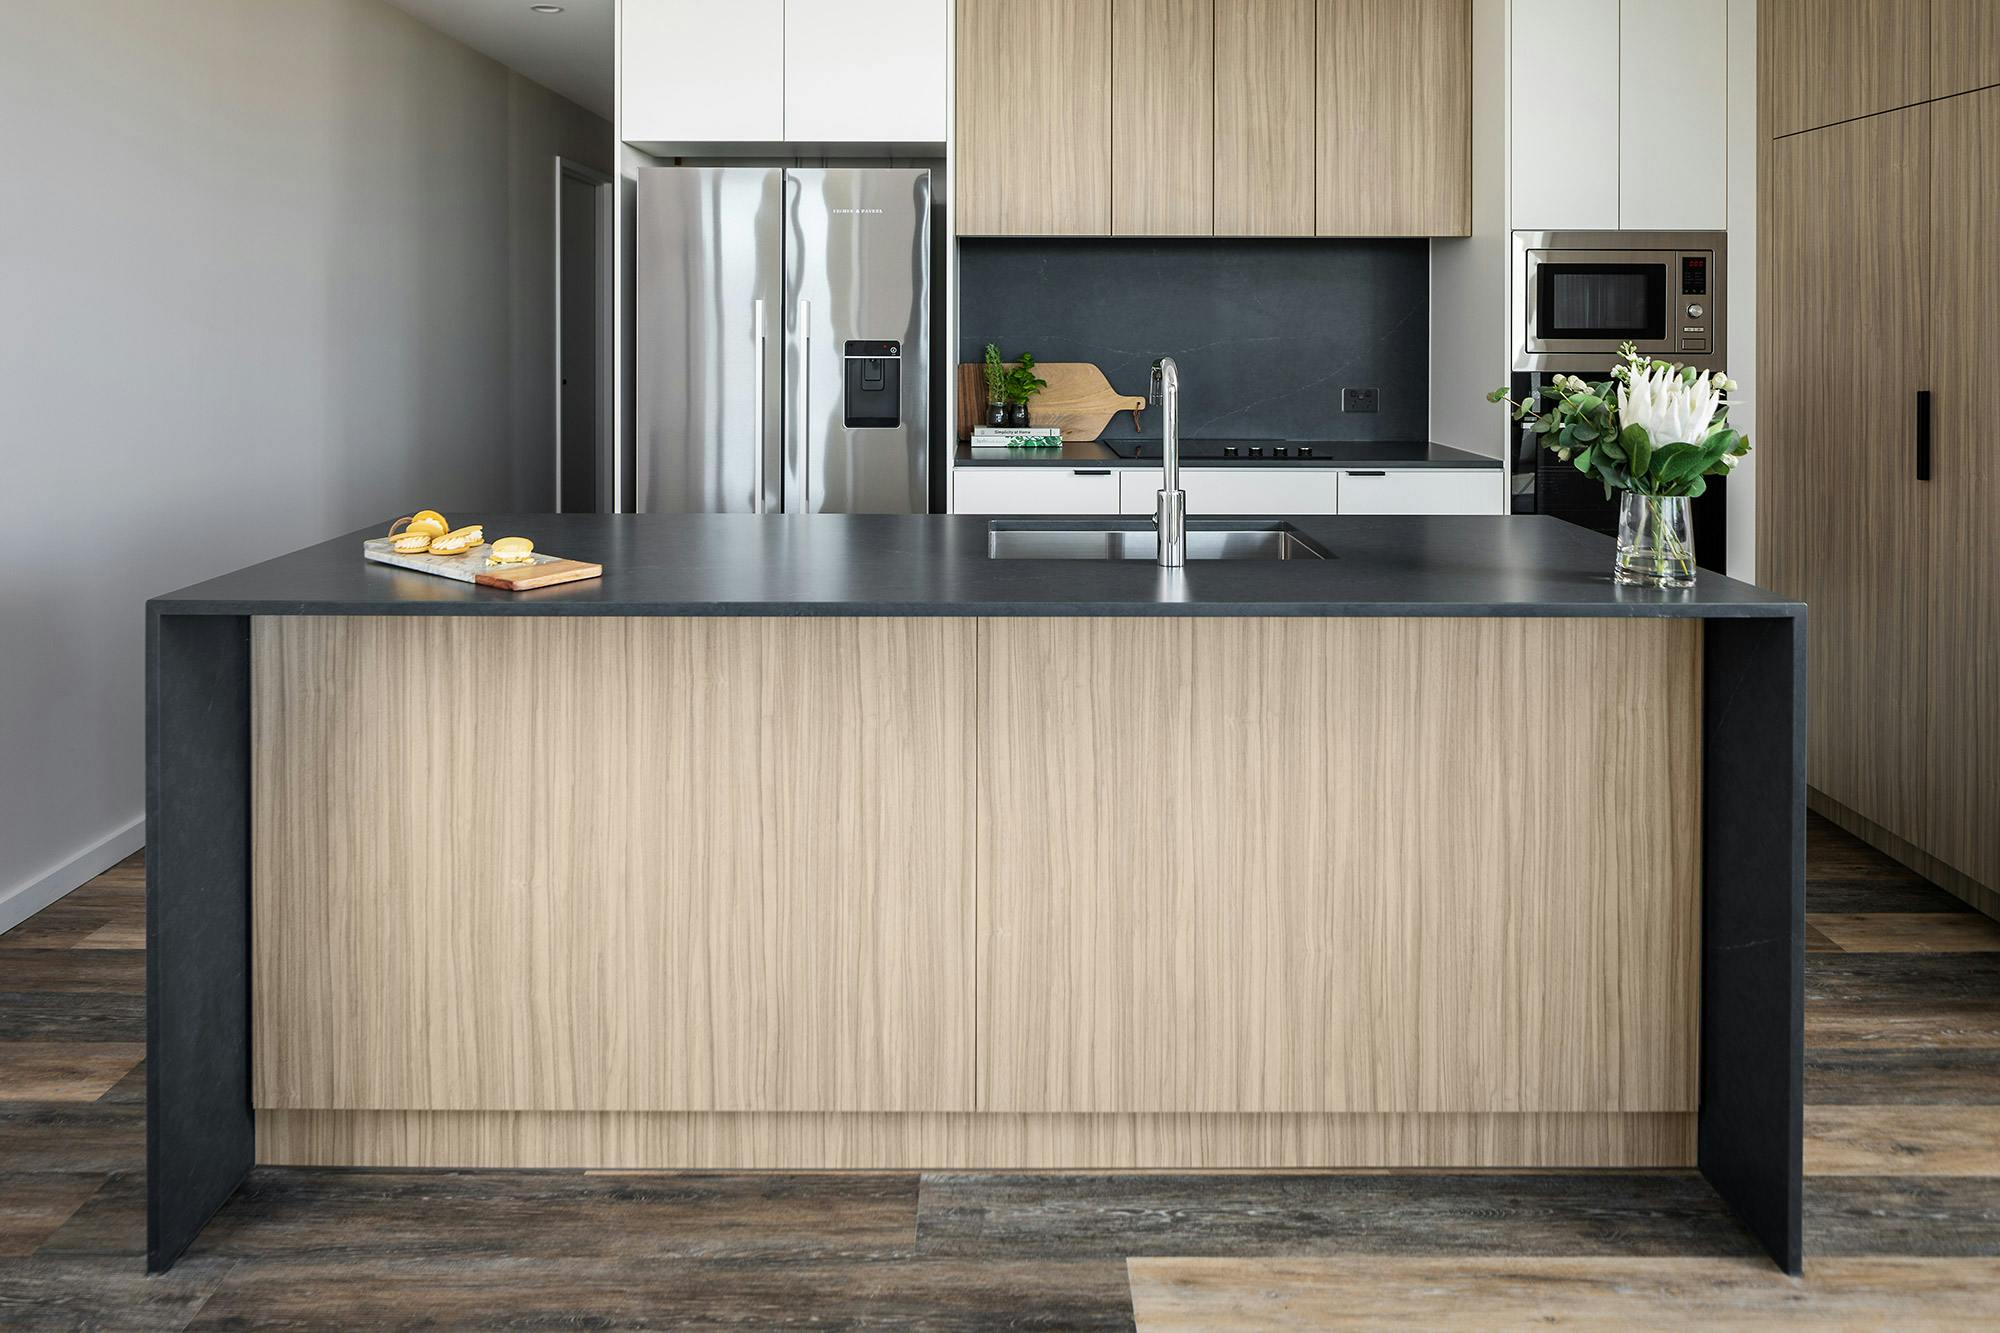 Bildnummer 41 des aktuellen Abschnitts von A luxurious rental building chooses Cosentino for its durability, elegance and sustainability von Cosentino Deutschland